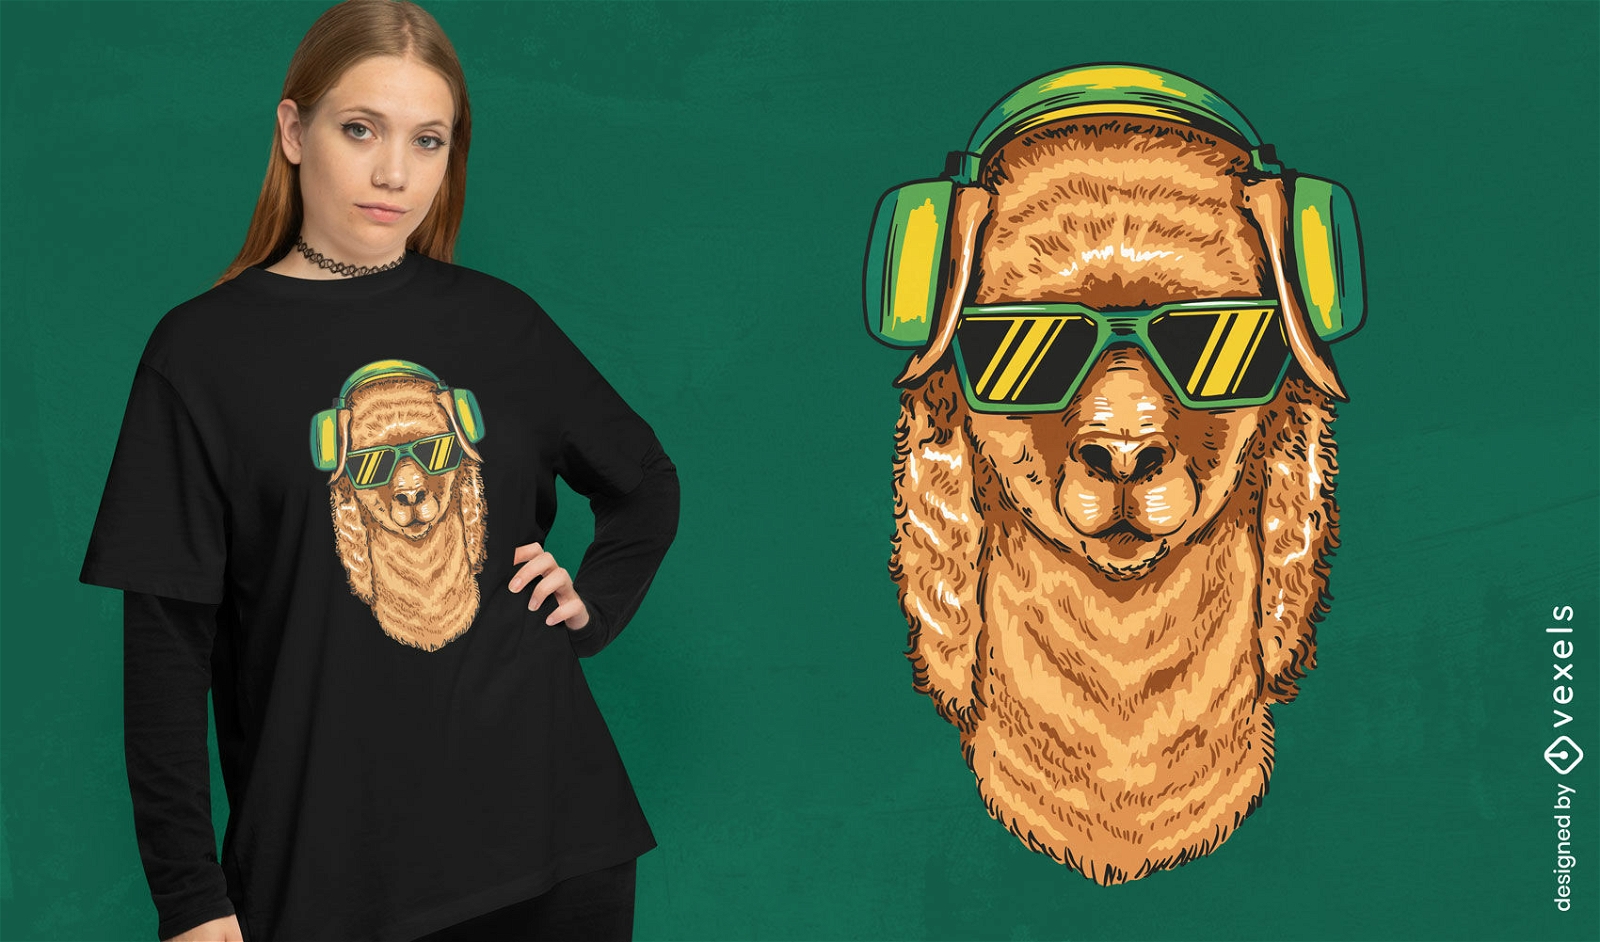 Cool alpaca con dise?o de camiseta de gafas de sol.